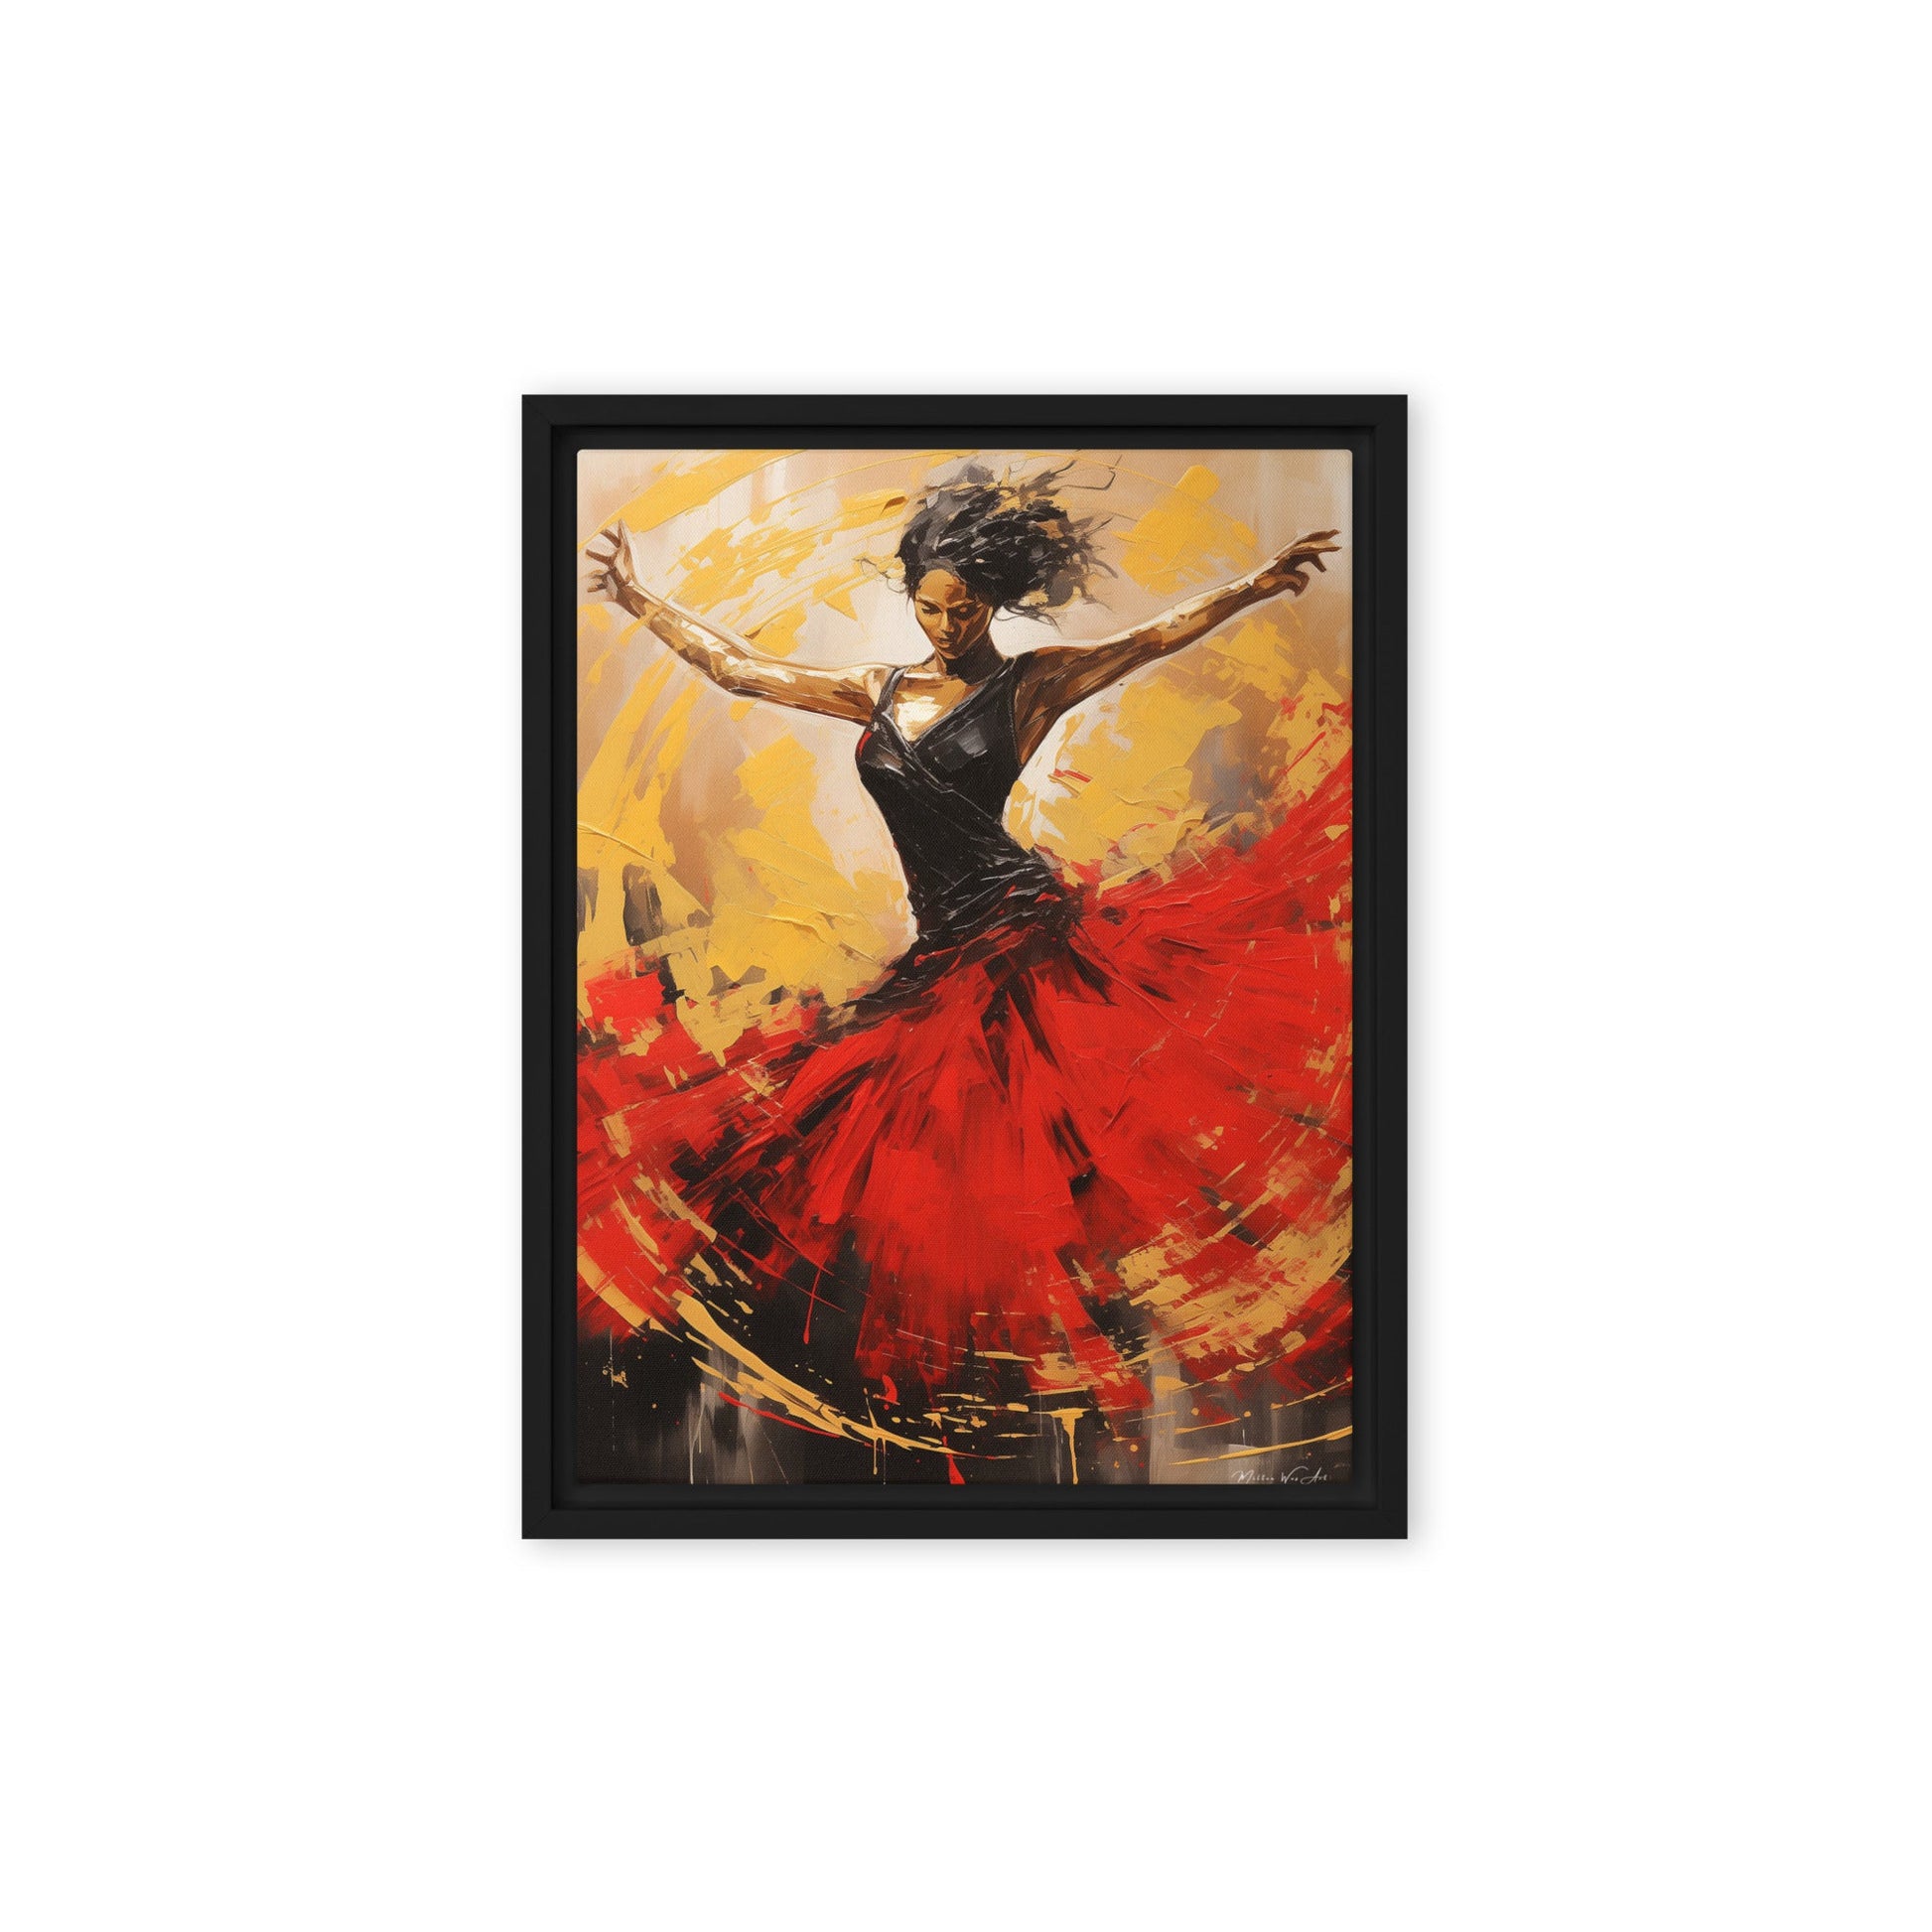 Misty Copeland-Inspired Ballerina Canvas Art - Elegant Pine Frame with Easy Mount - Milton Wes Art Framed Wall Art